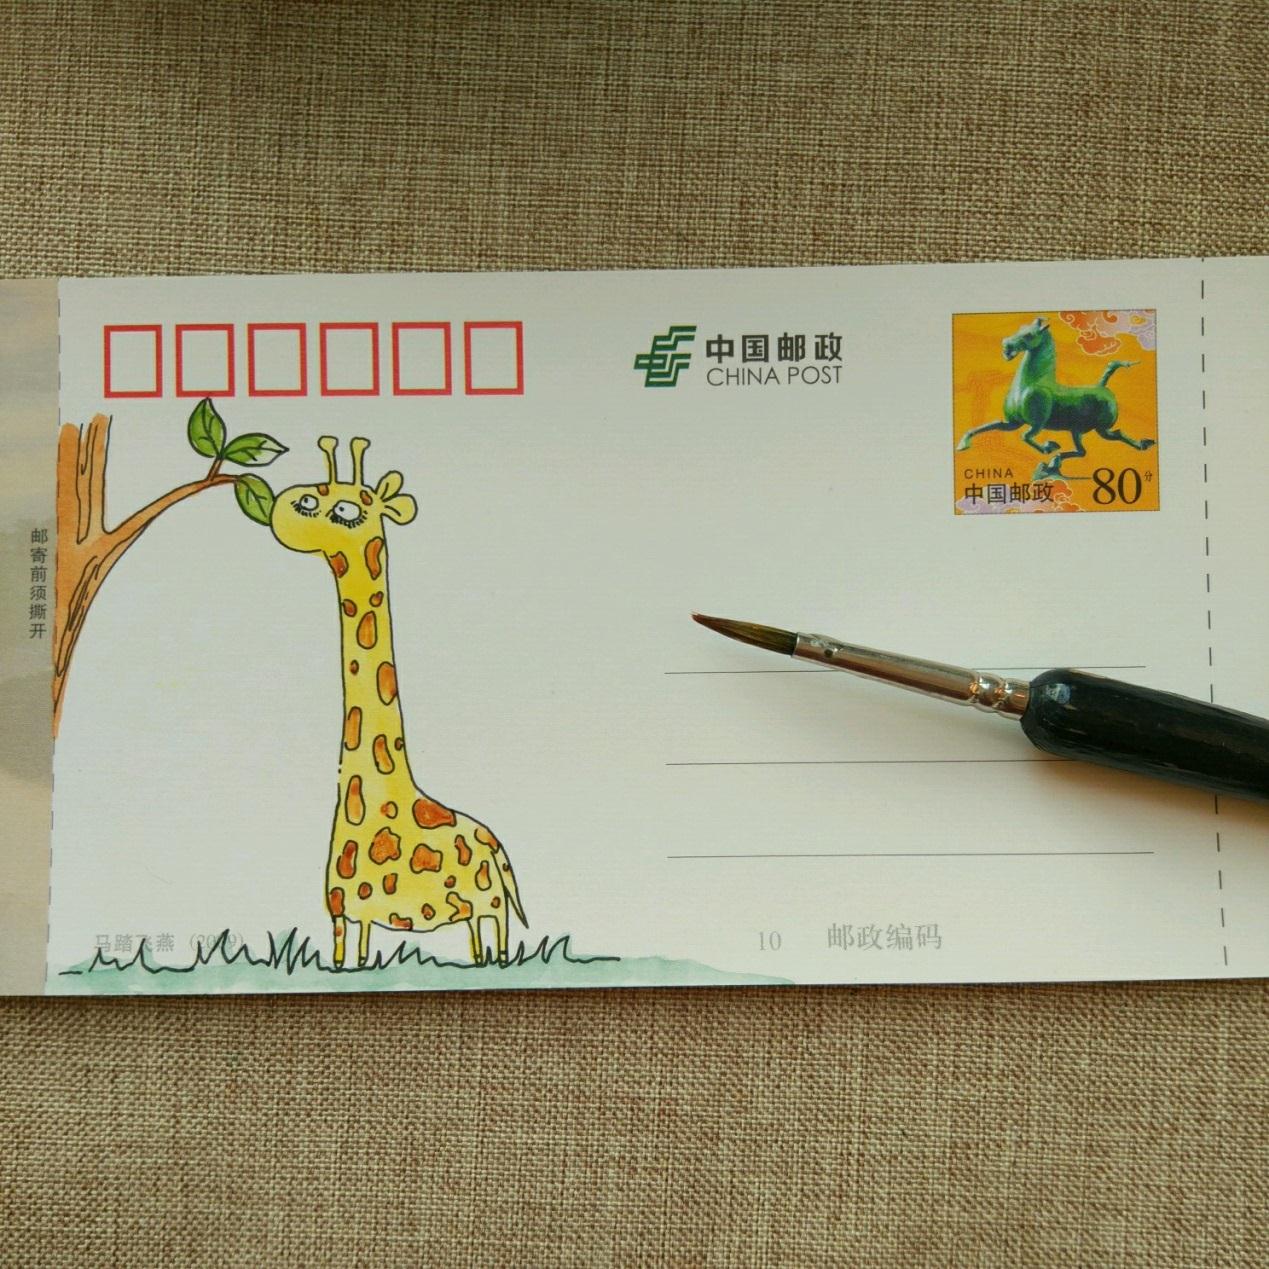 手工绘贺卡明信片手工制作方法,有趣的动物diy手绘明信片长颈鹿图案